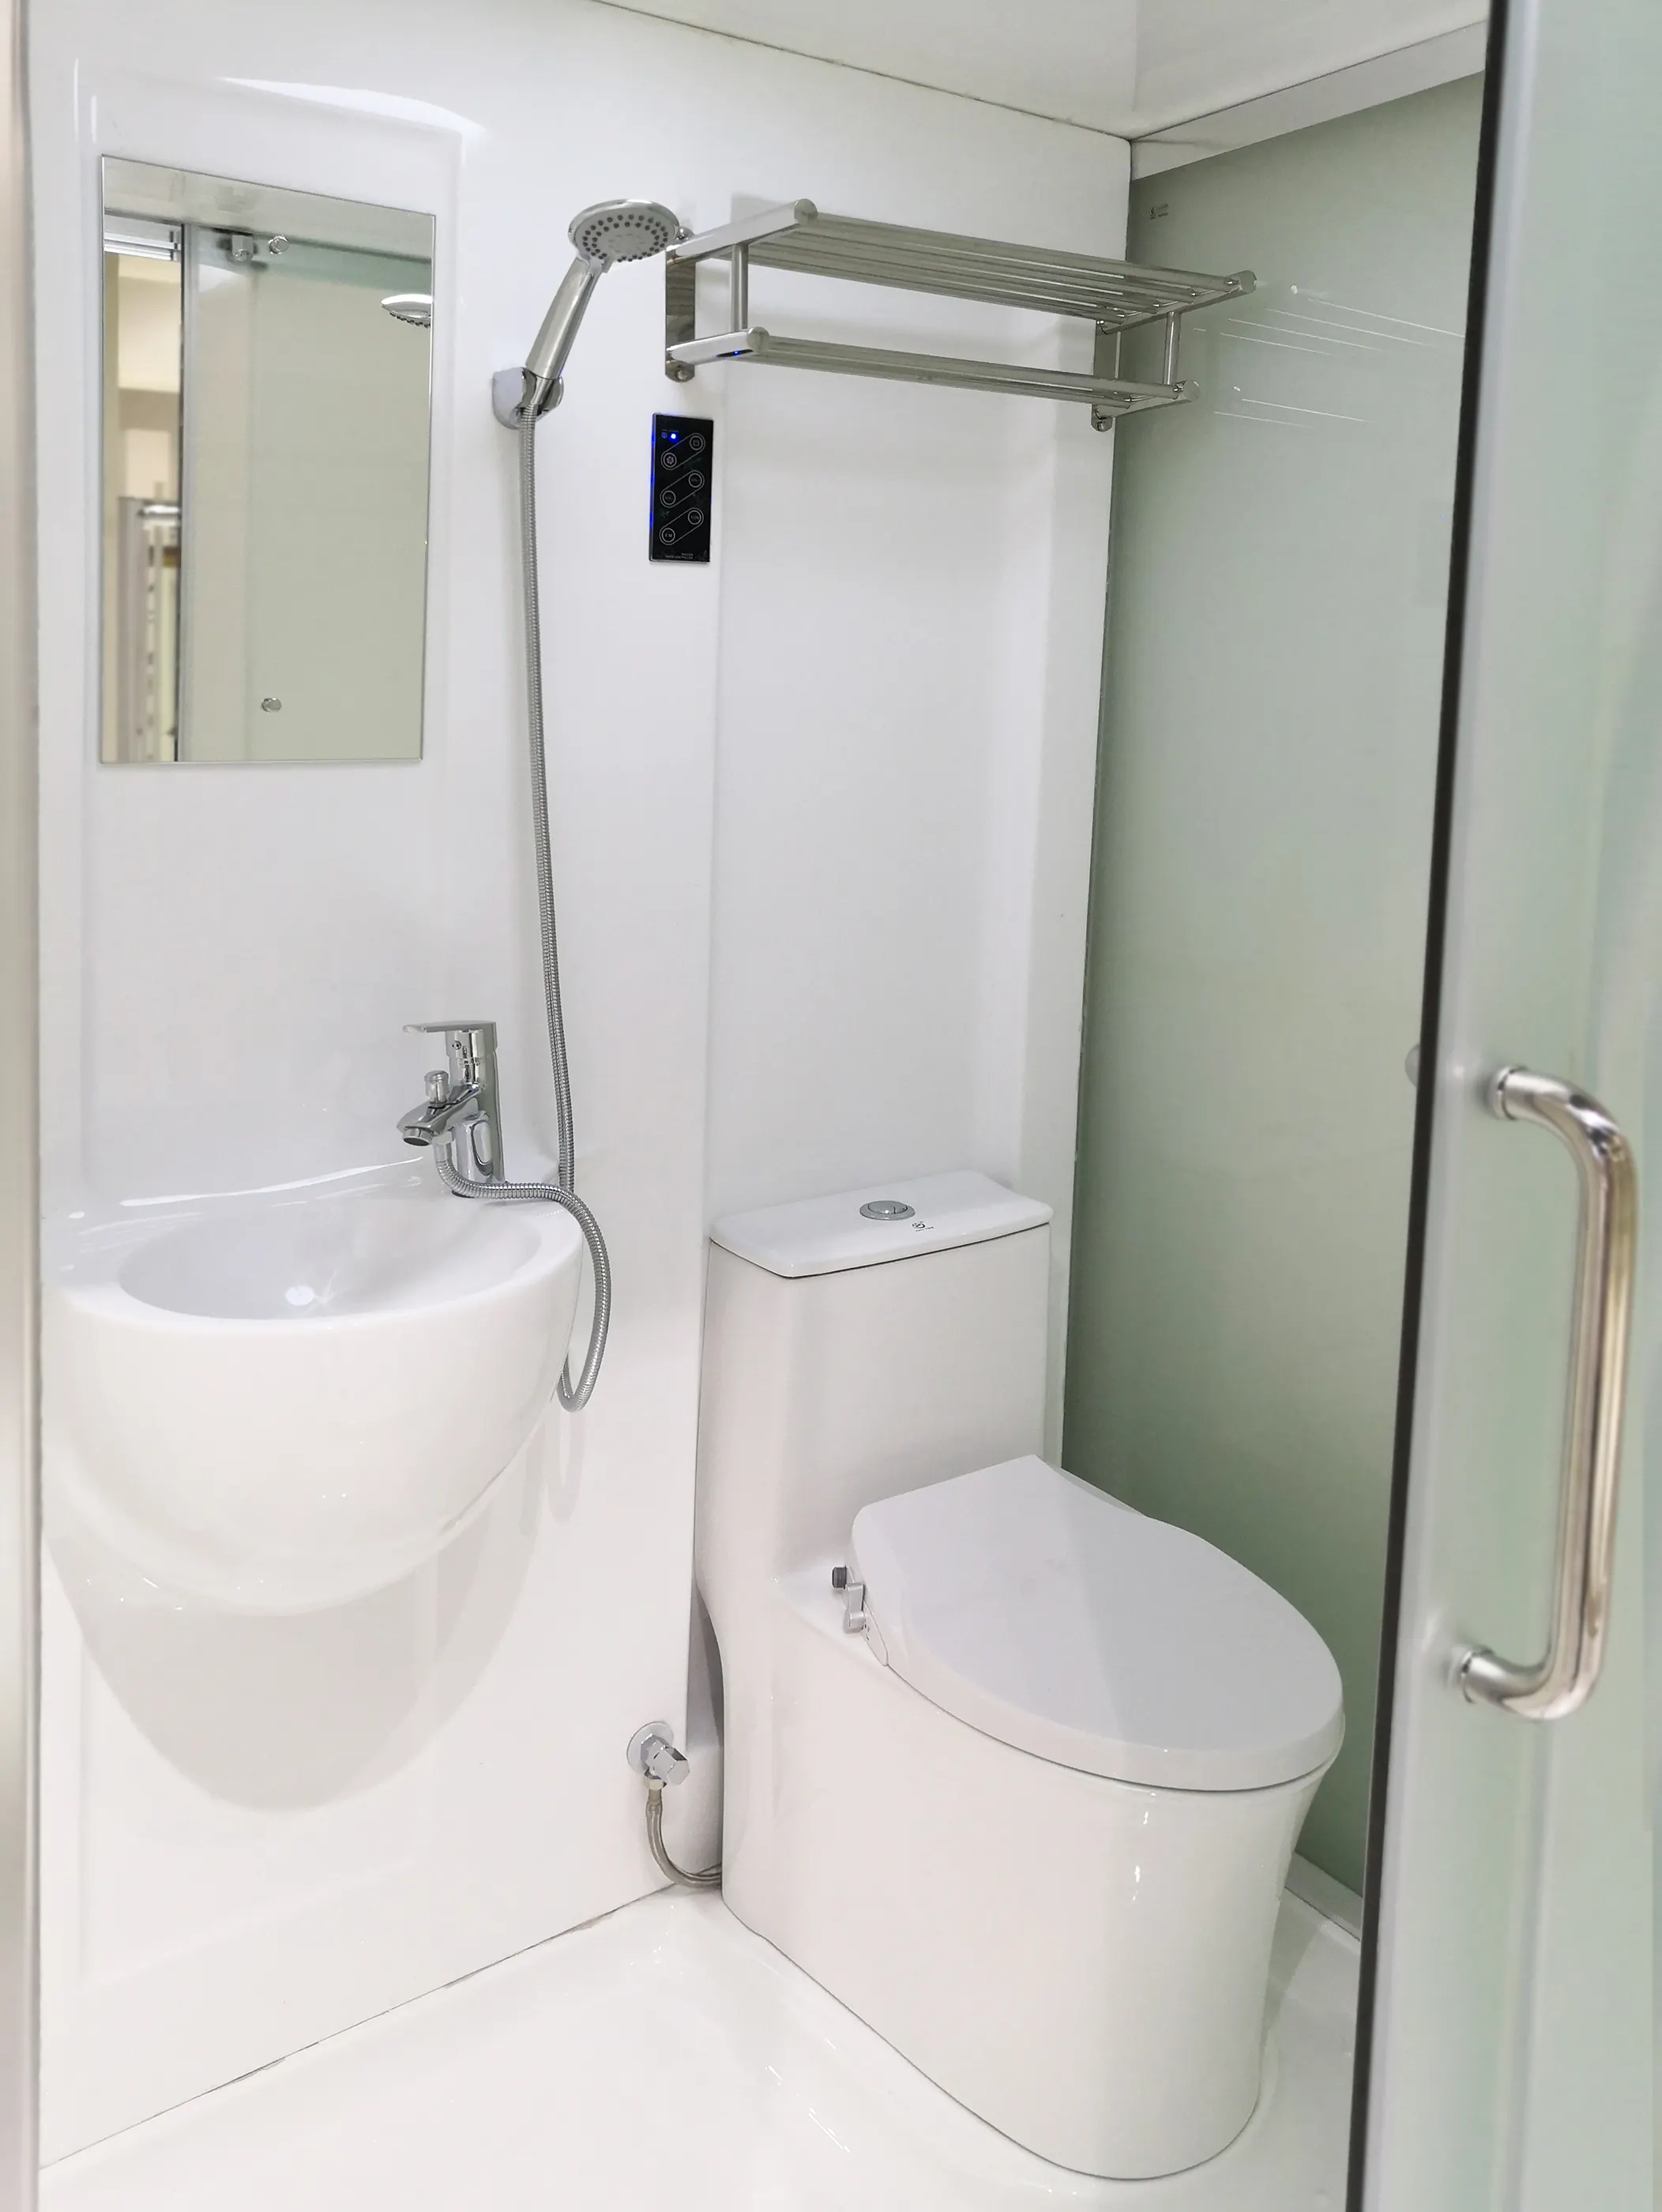 Doccia prefabbricata tutto In una doccia wc facile installazione doccia unità bagno prefabbricata